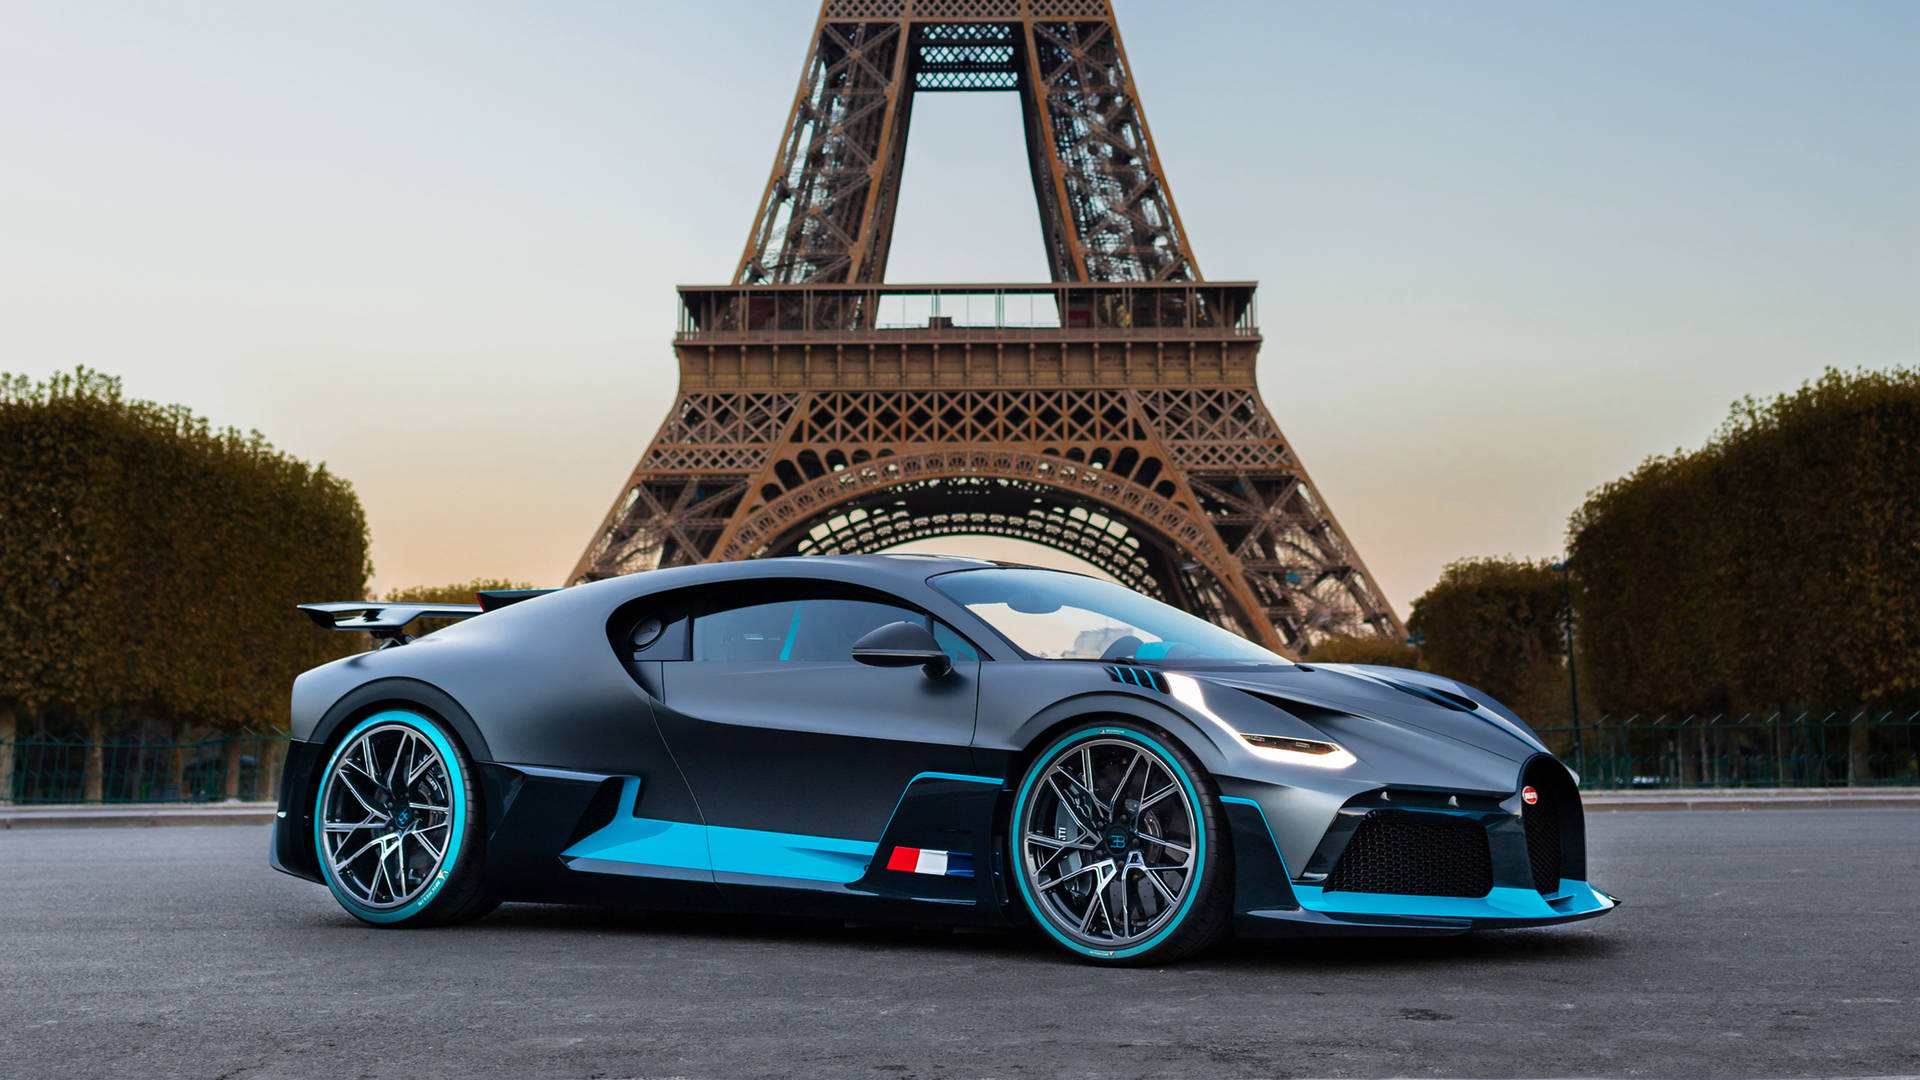 Cool Bugatti Car In Paris Background